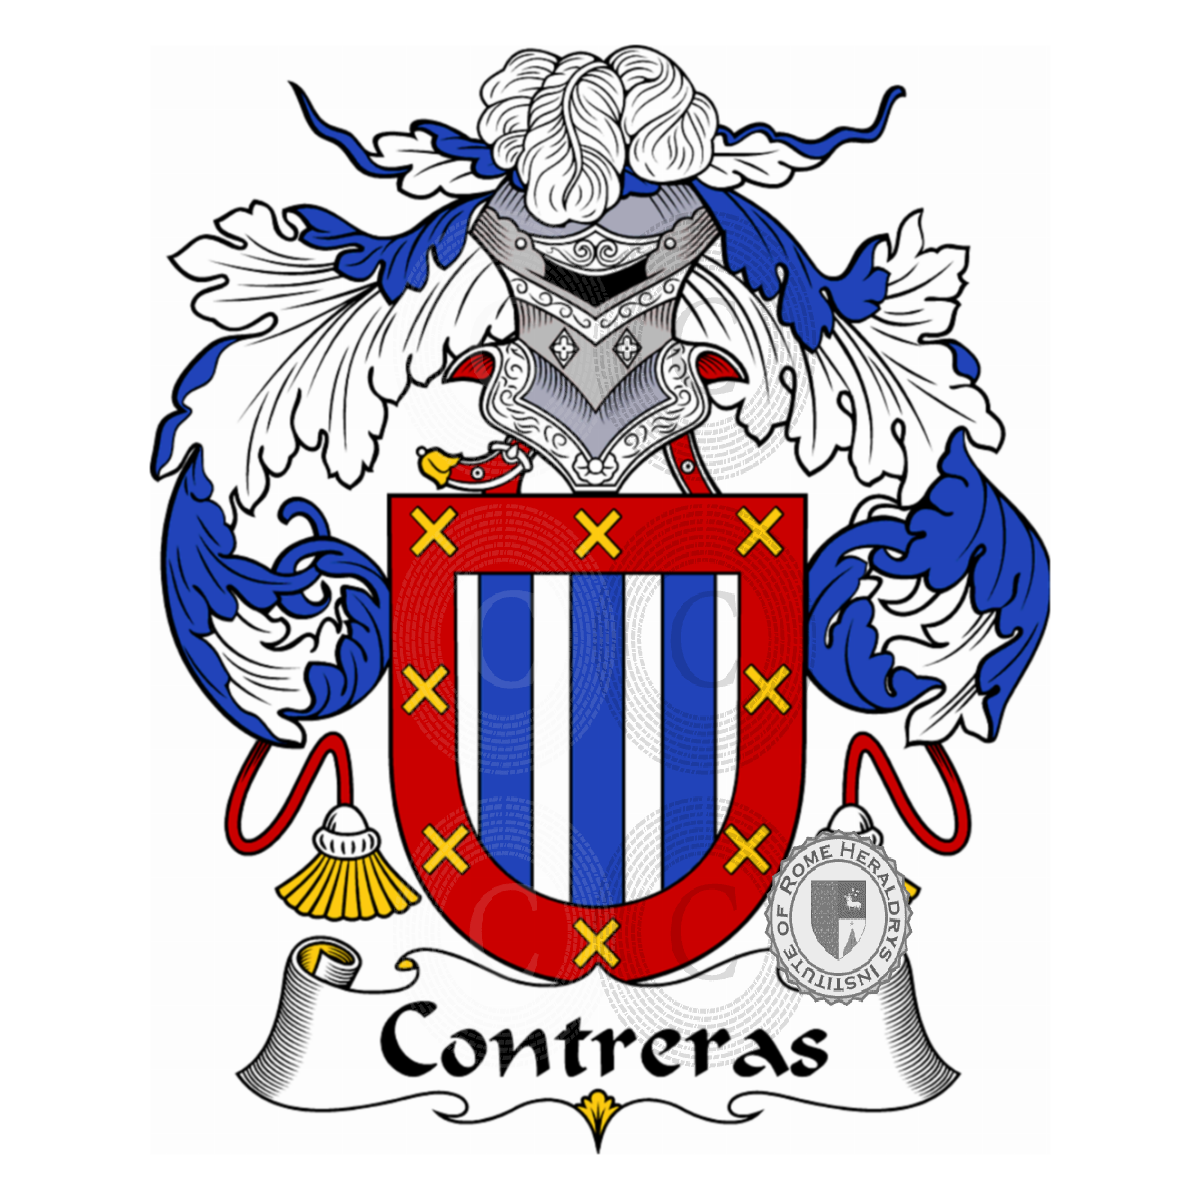 Contreras familia heráldica genealogía escudo Contreras